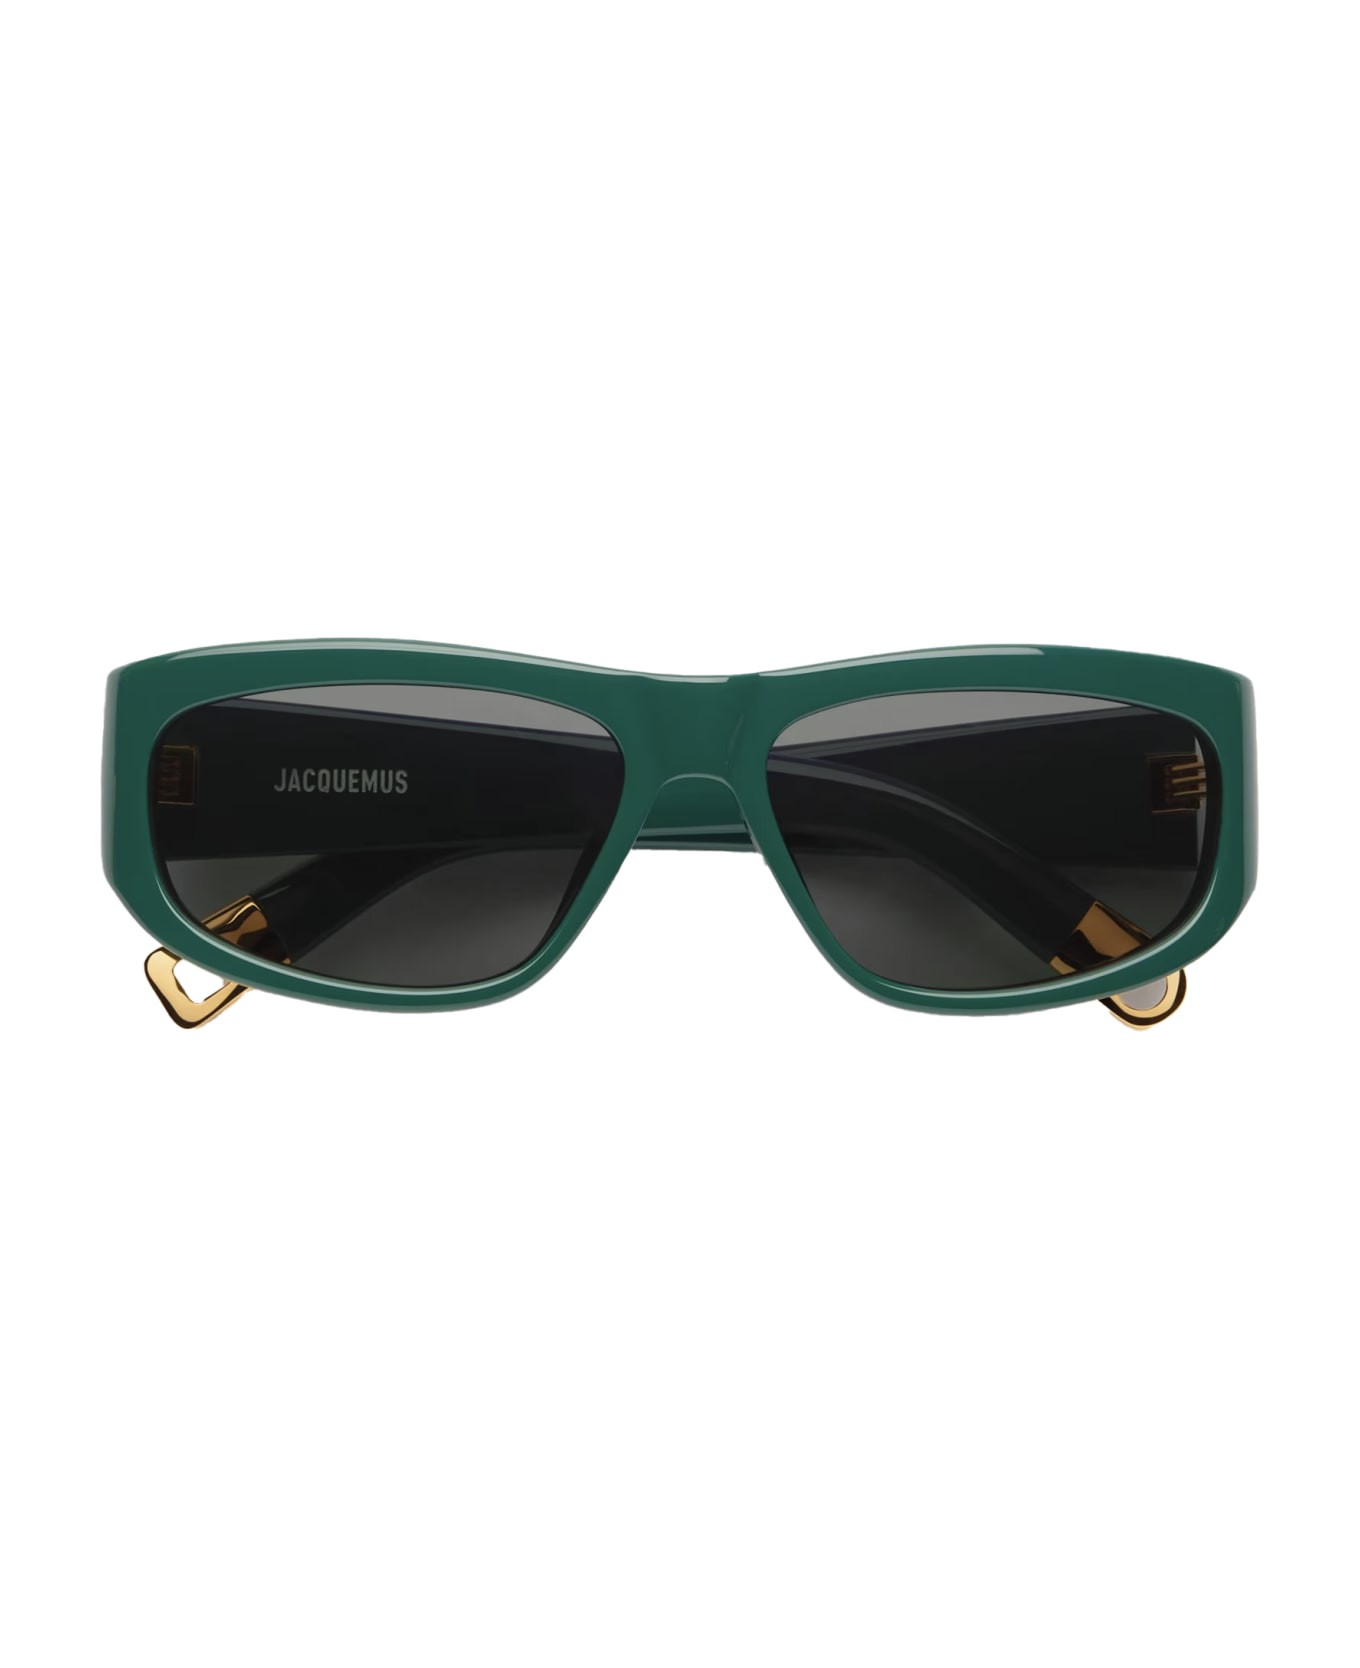 Jacquemus Sunglasses - Verde/Grigio